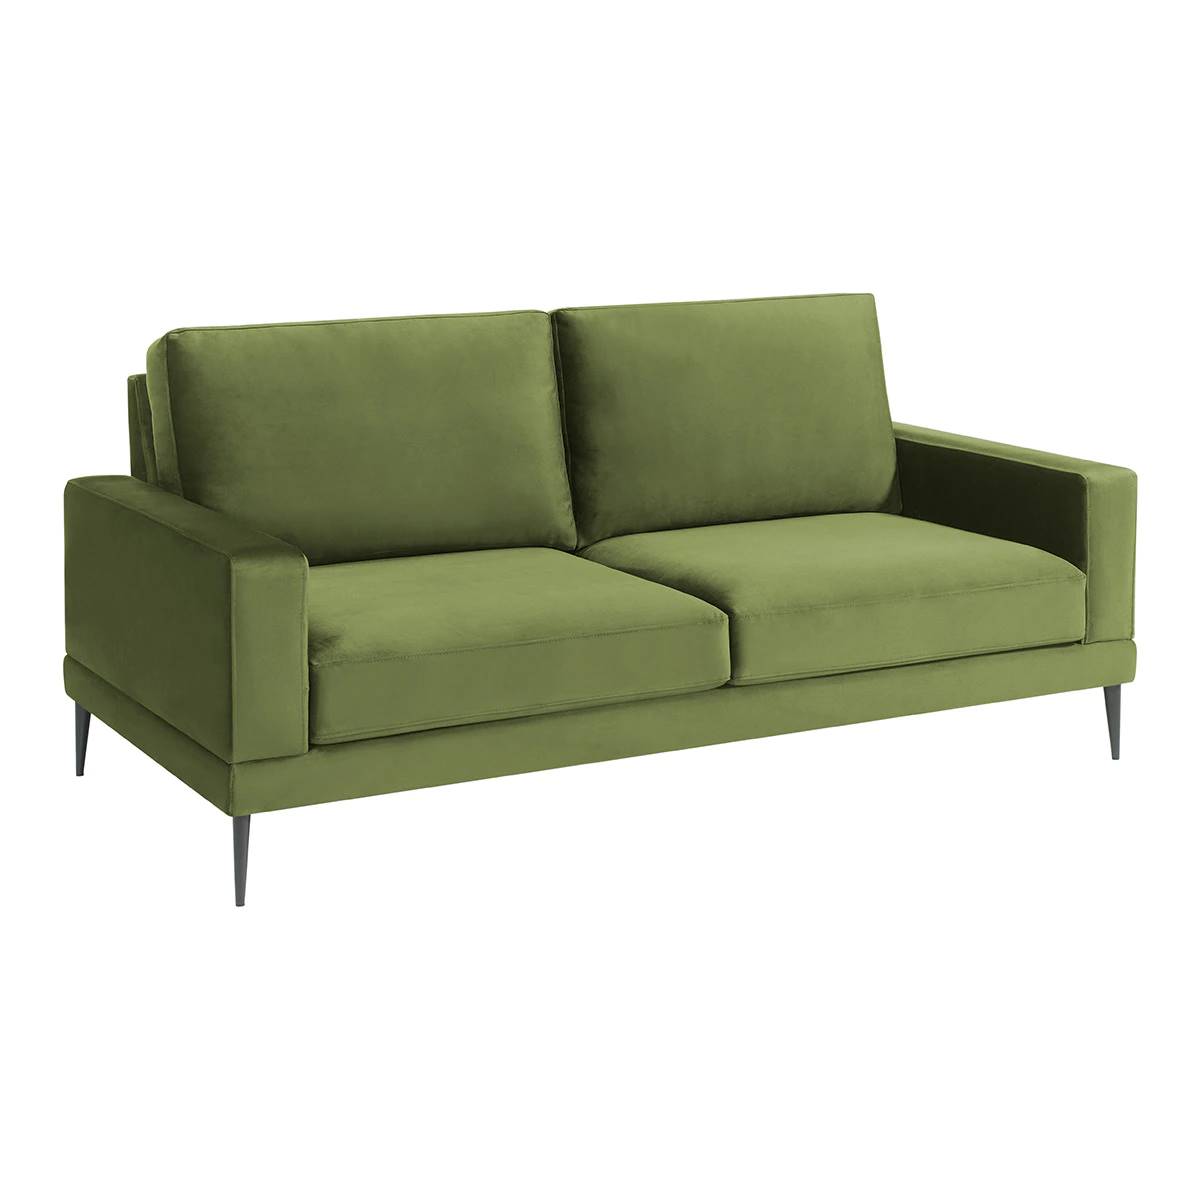 Sofá tapizado en terciopelo de 3 plazas con patas metálica modelo Silver en color verde de El Corte Inglés